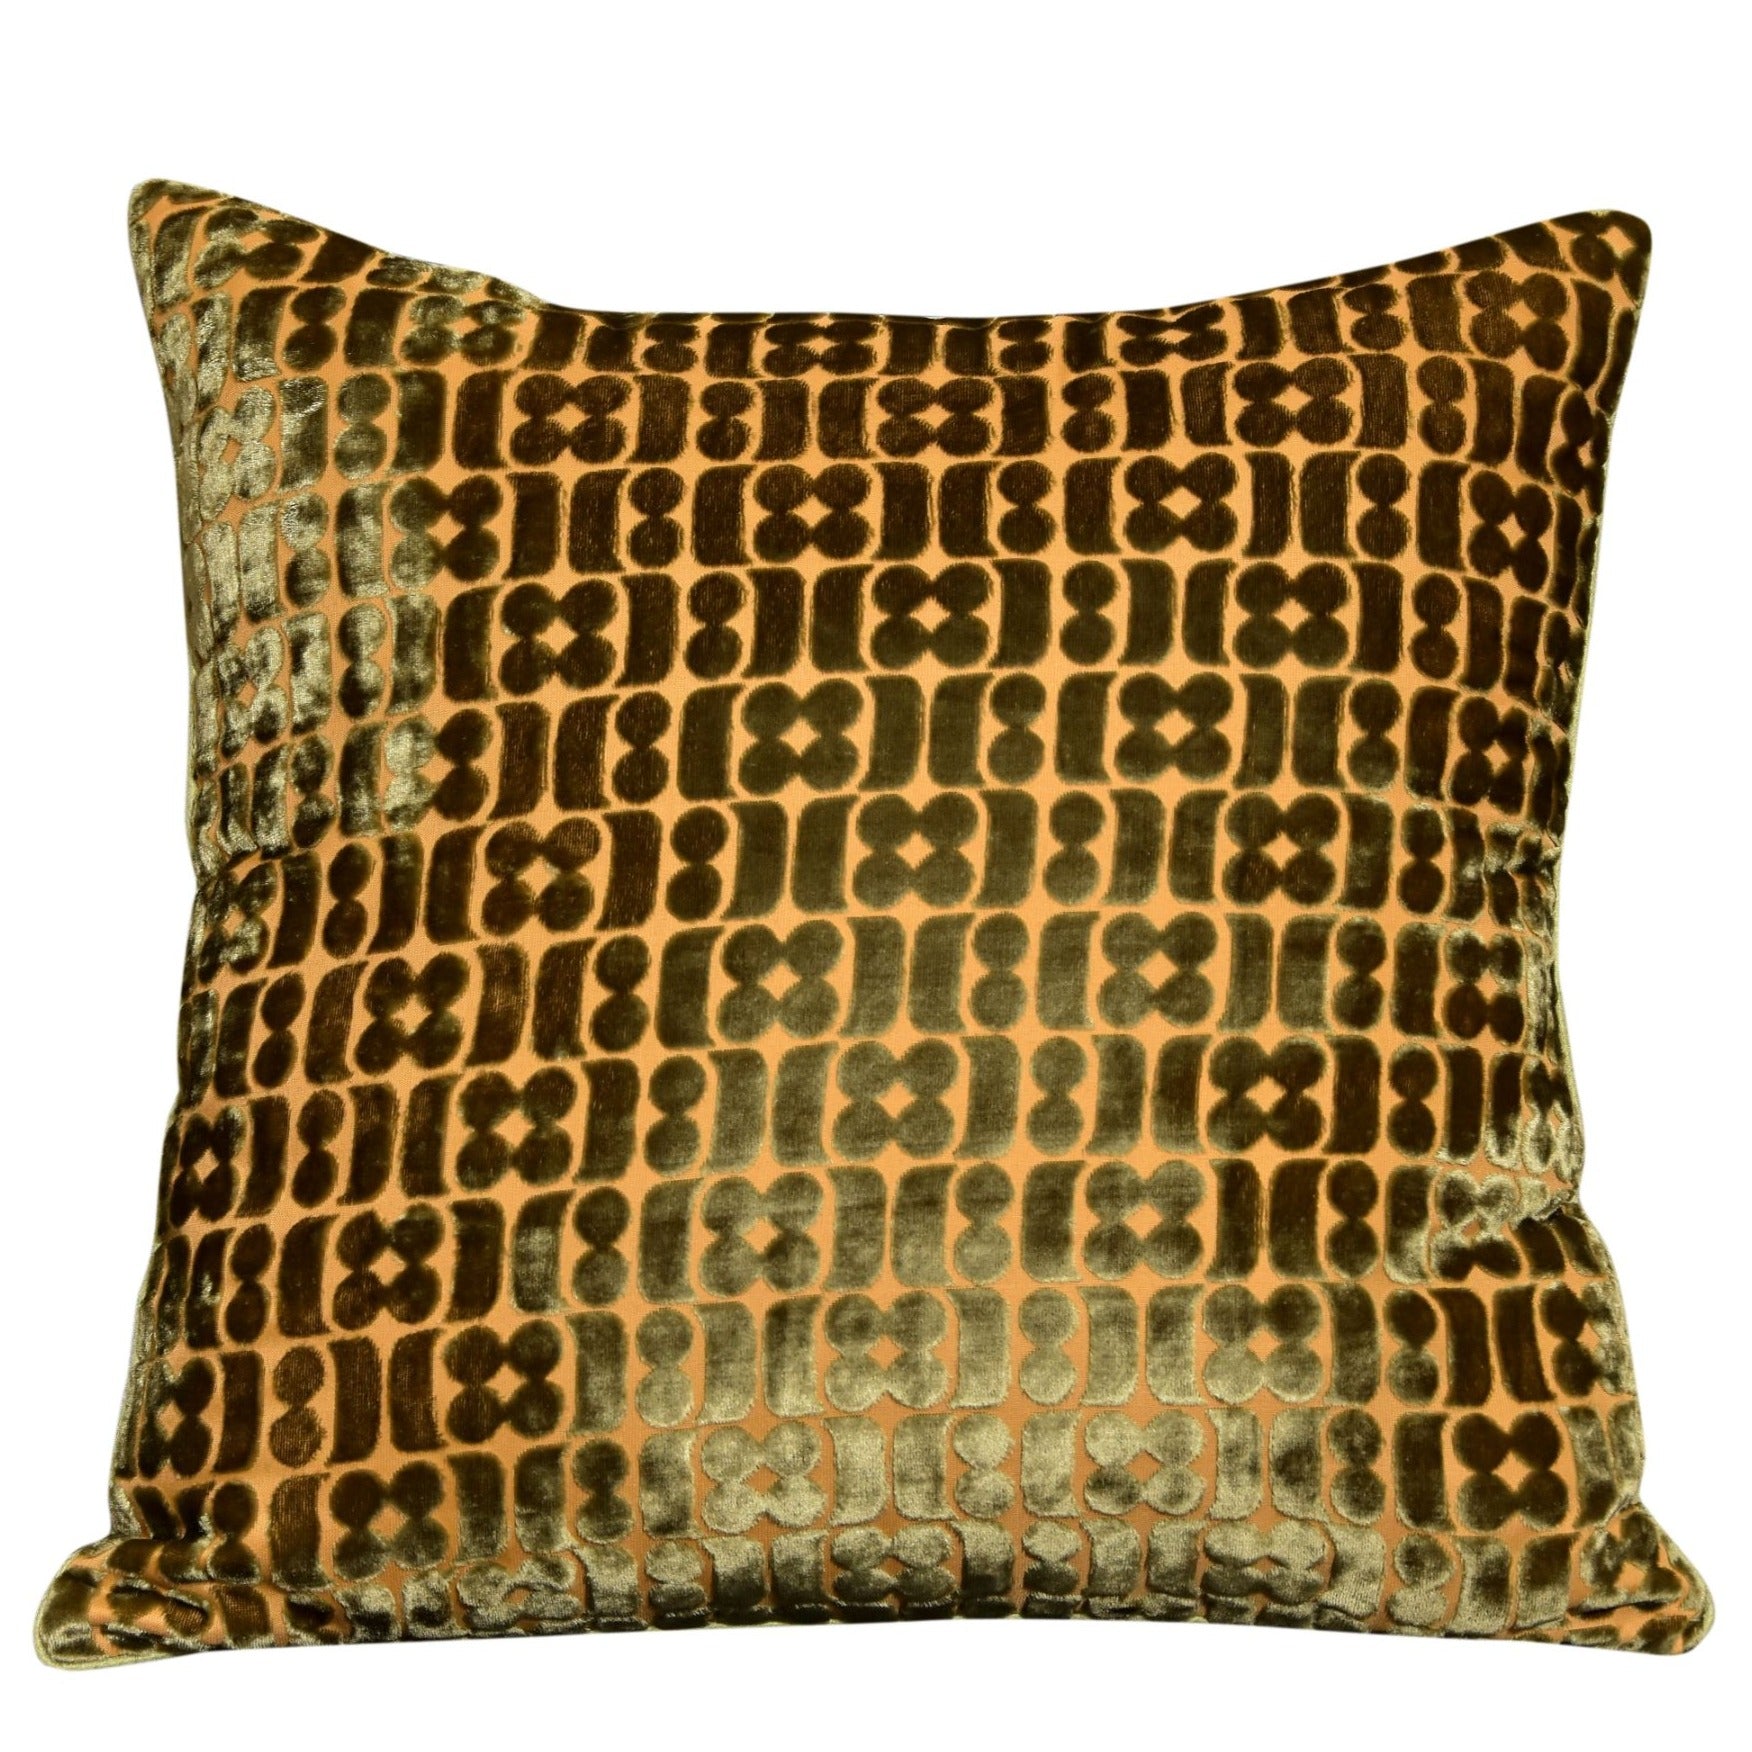 Neelofar's mehndi coloured velvet cushion cover